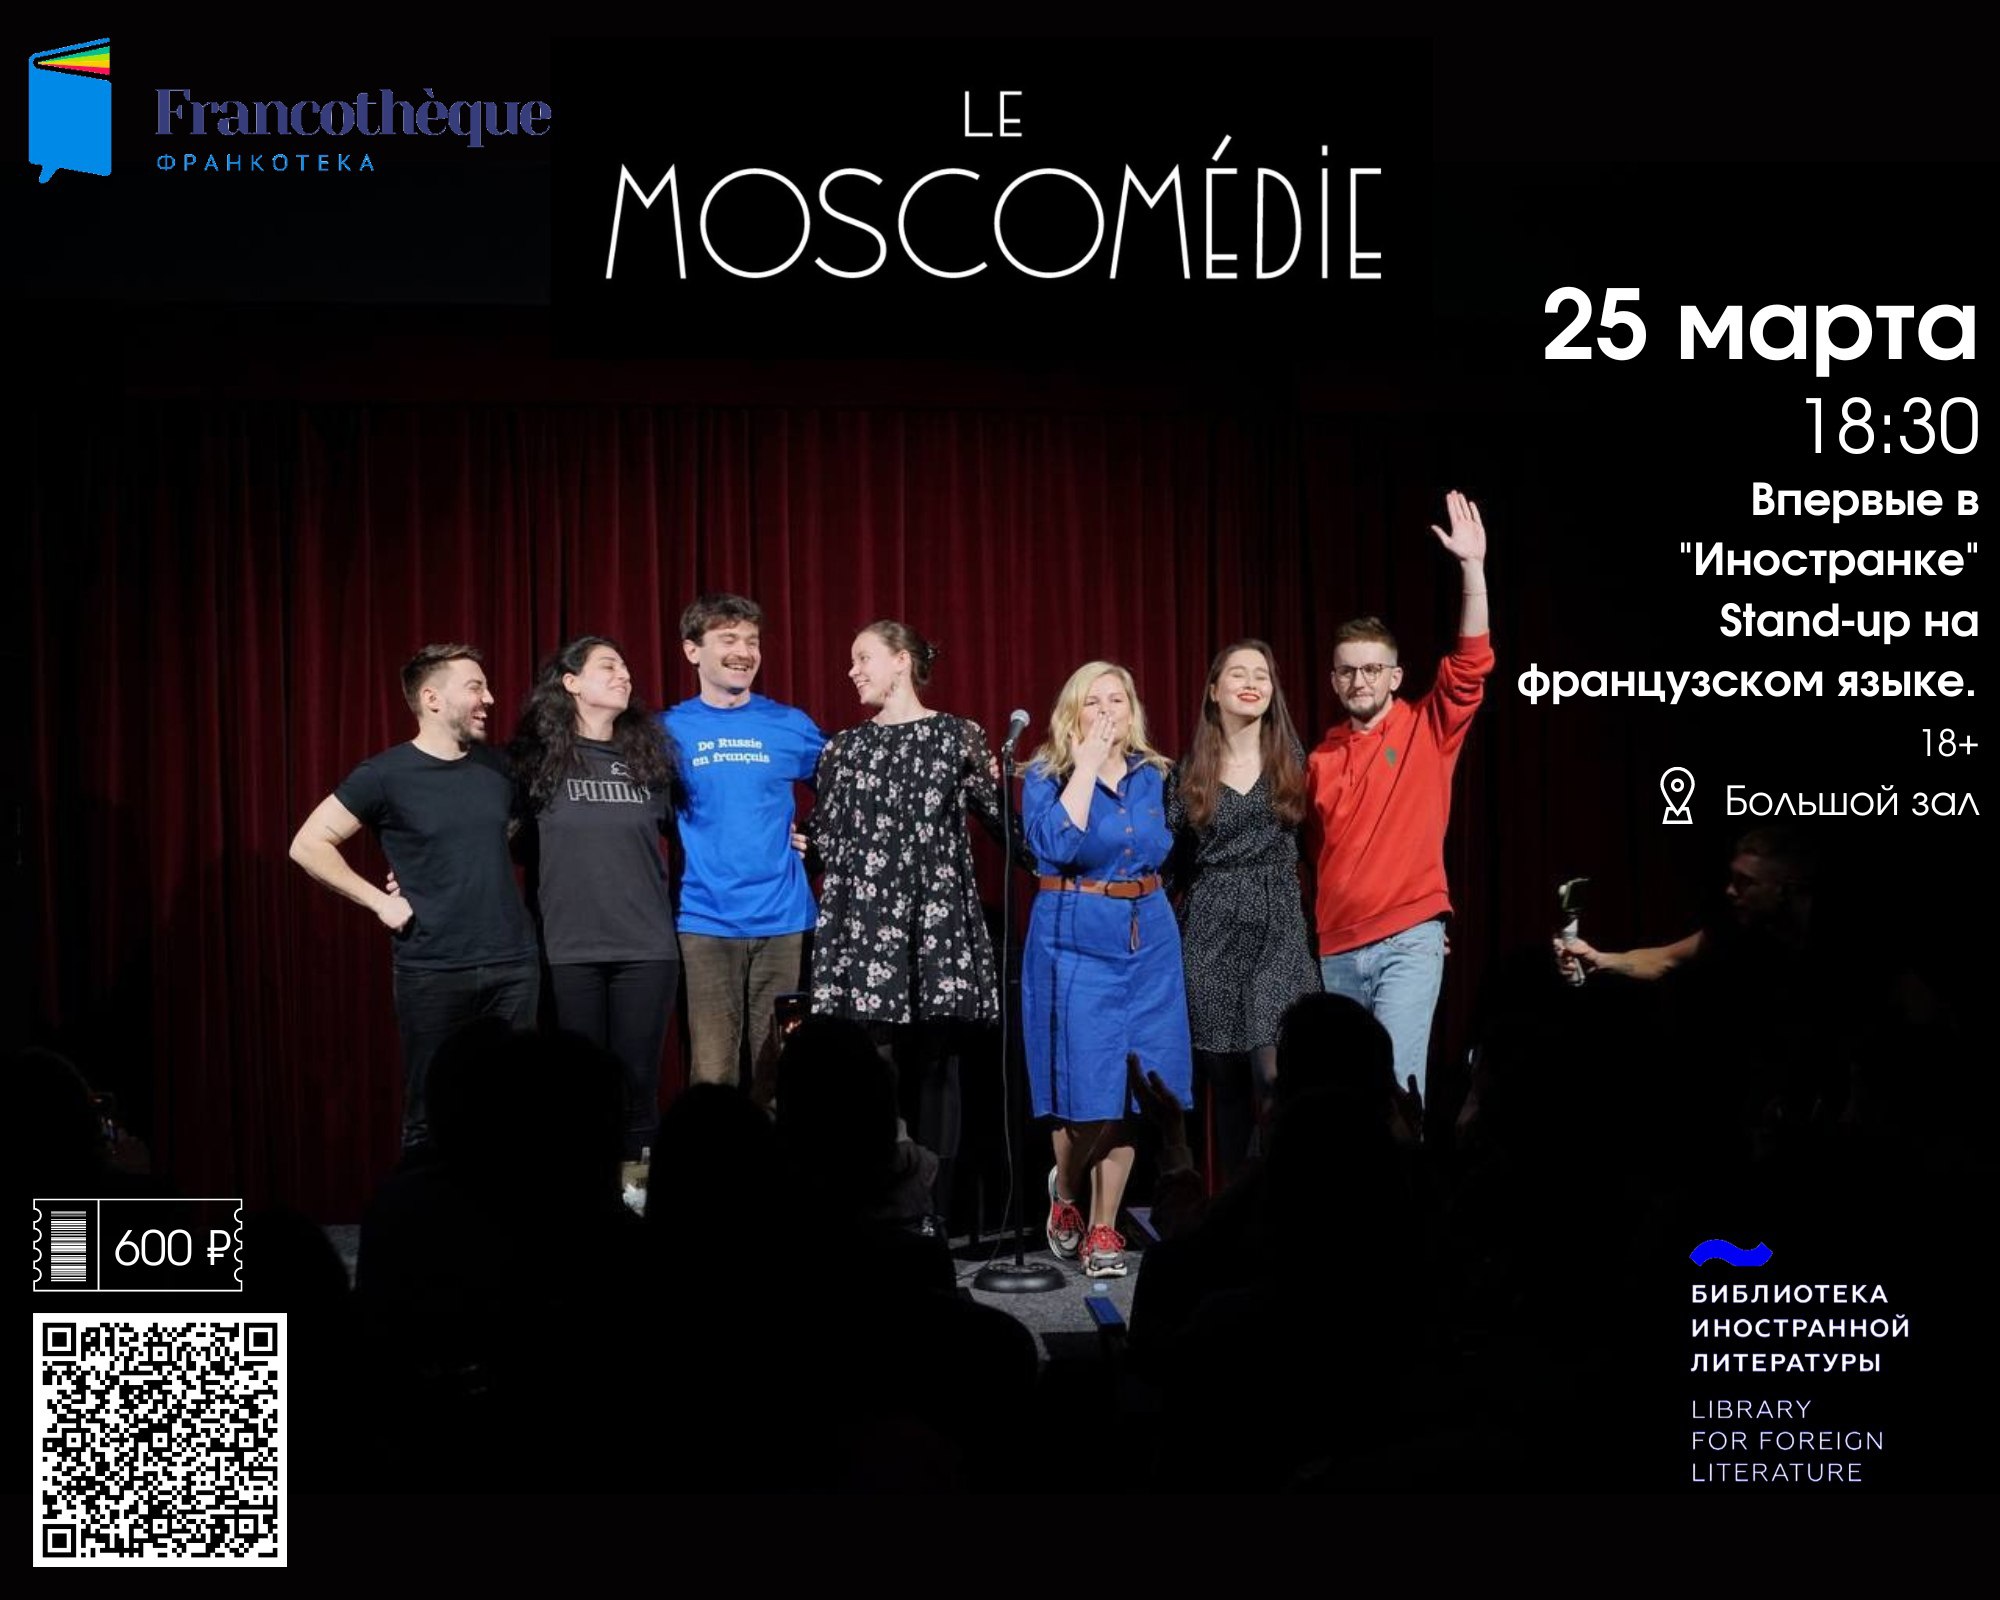 Stand-up en français, Le Moscomédie